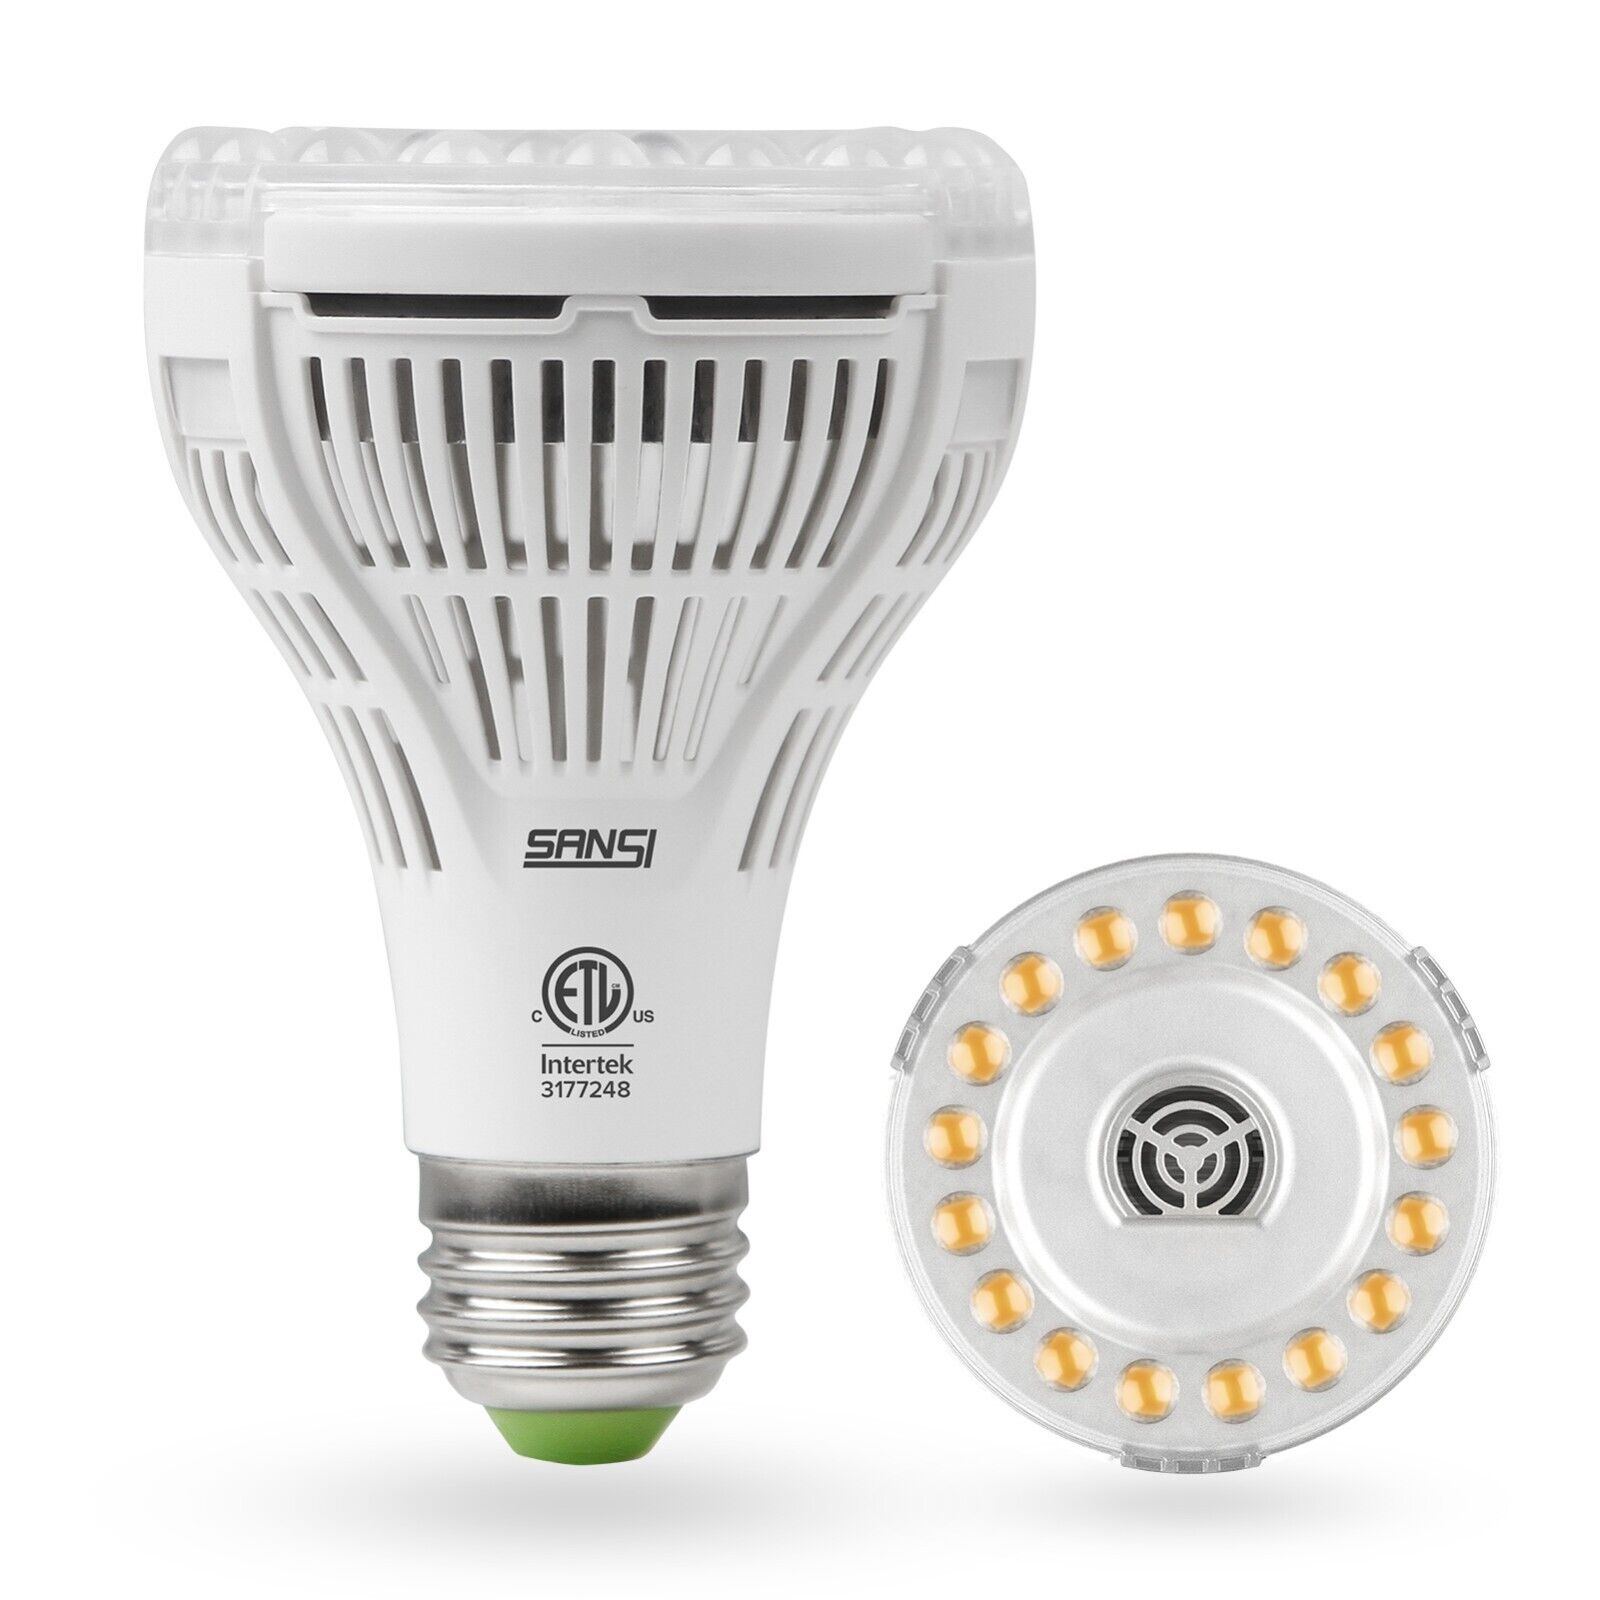 SANSI 15W LED Plant Grow Light Bulb Full Spectrum Lamp PR25 A21 Indoor Sunlight